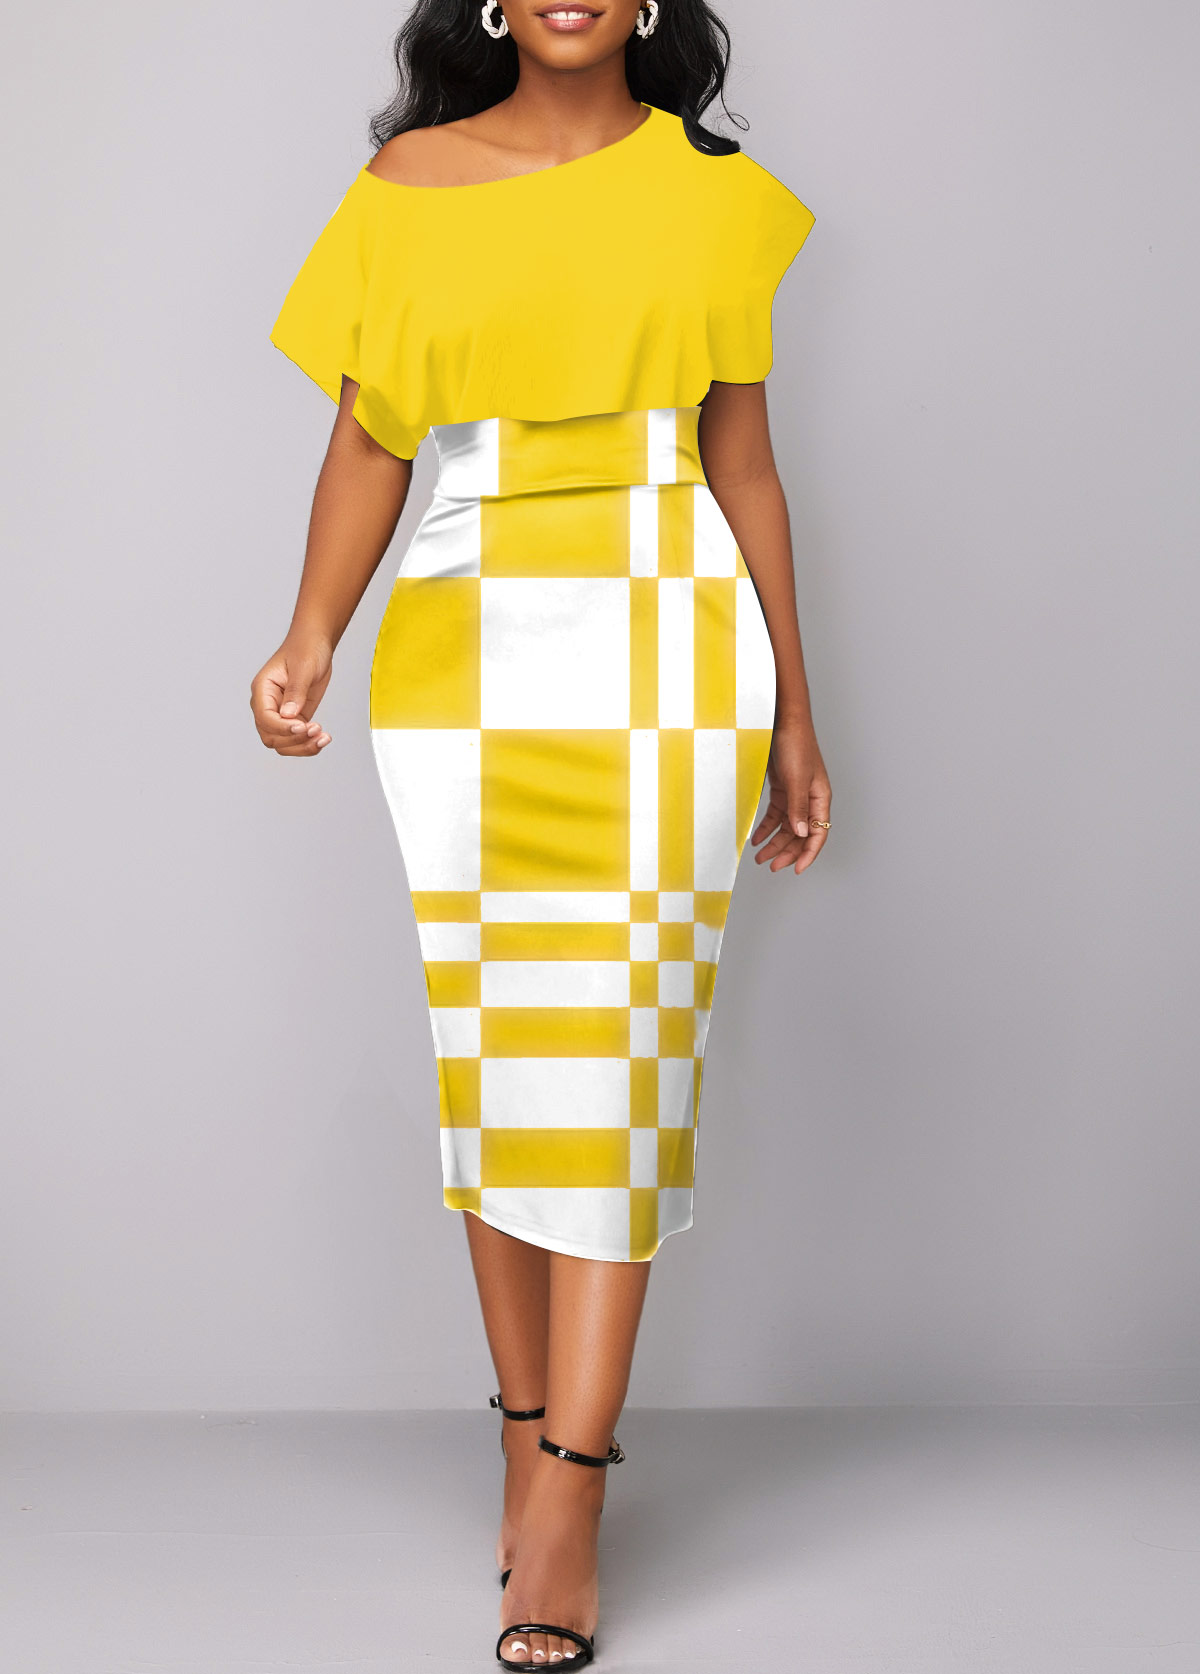 Geometric Print Asymmetry Yellow Boat Neck Bodycon Dress